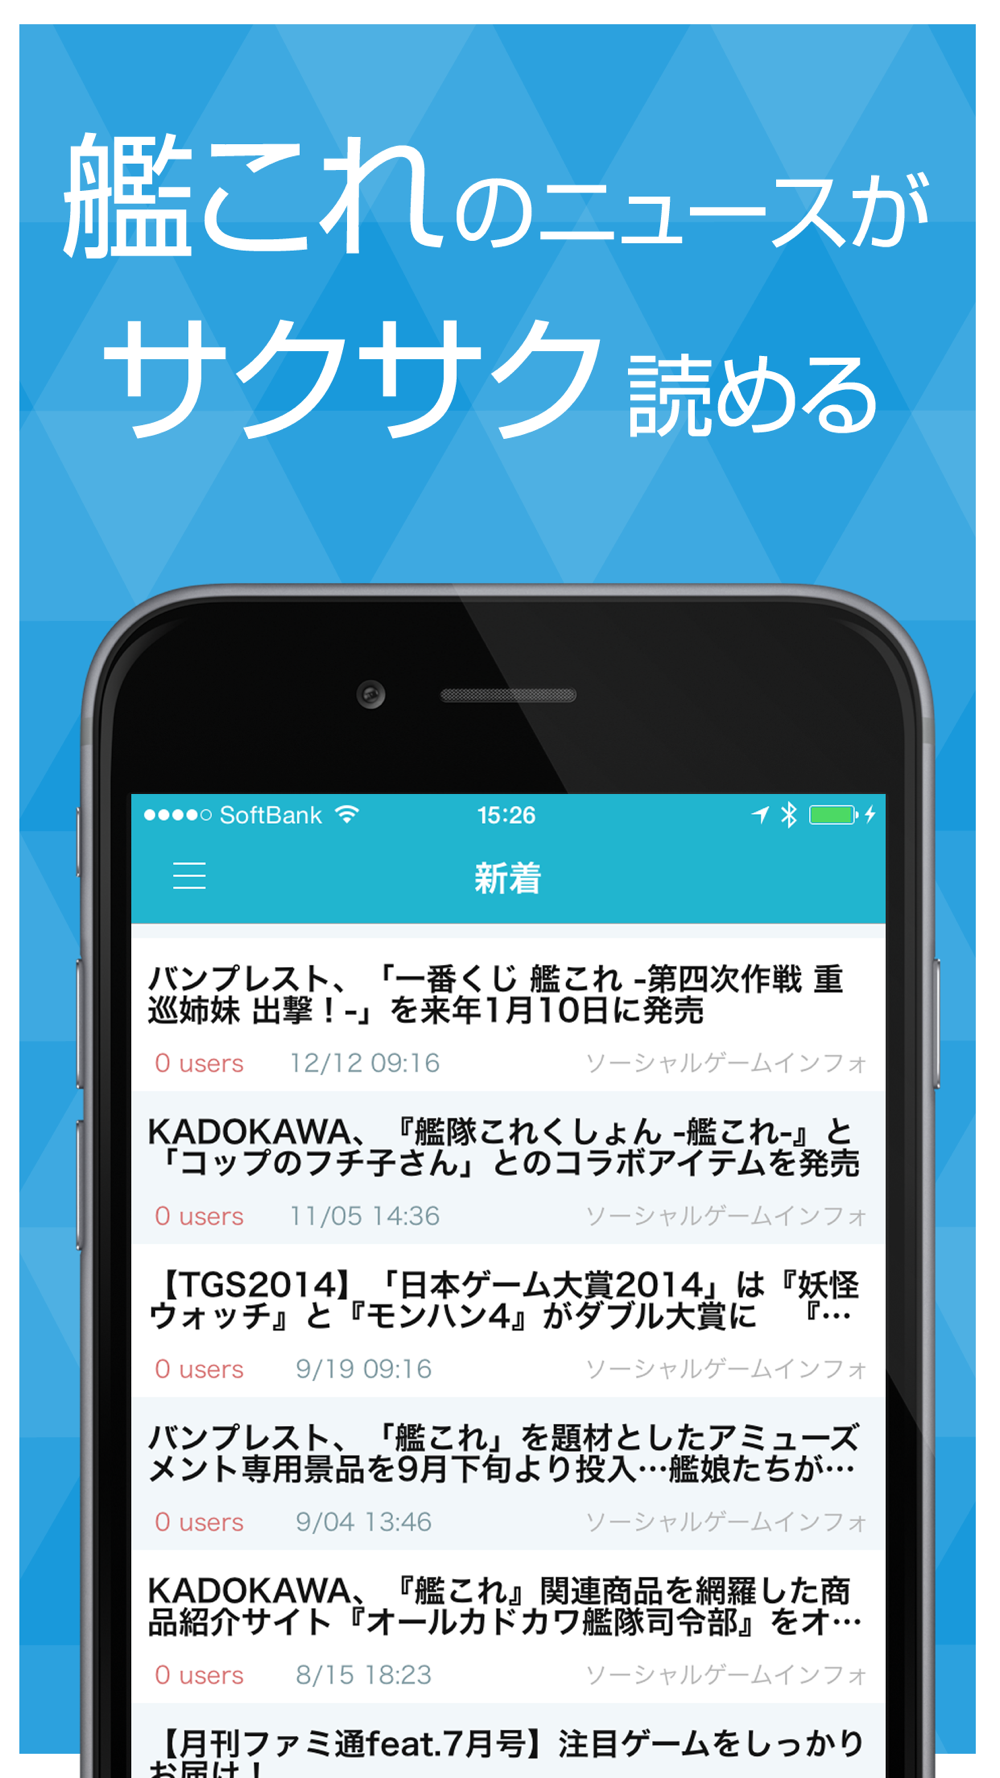 攻略ニュースまとめ速報 For 艦隊これくしょん艦これ Free Download App For Iphone Steprimo Com